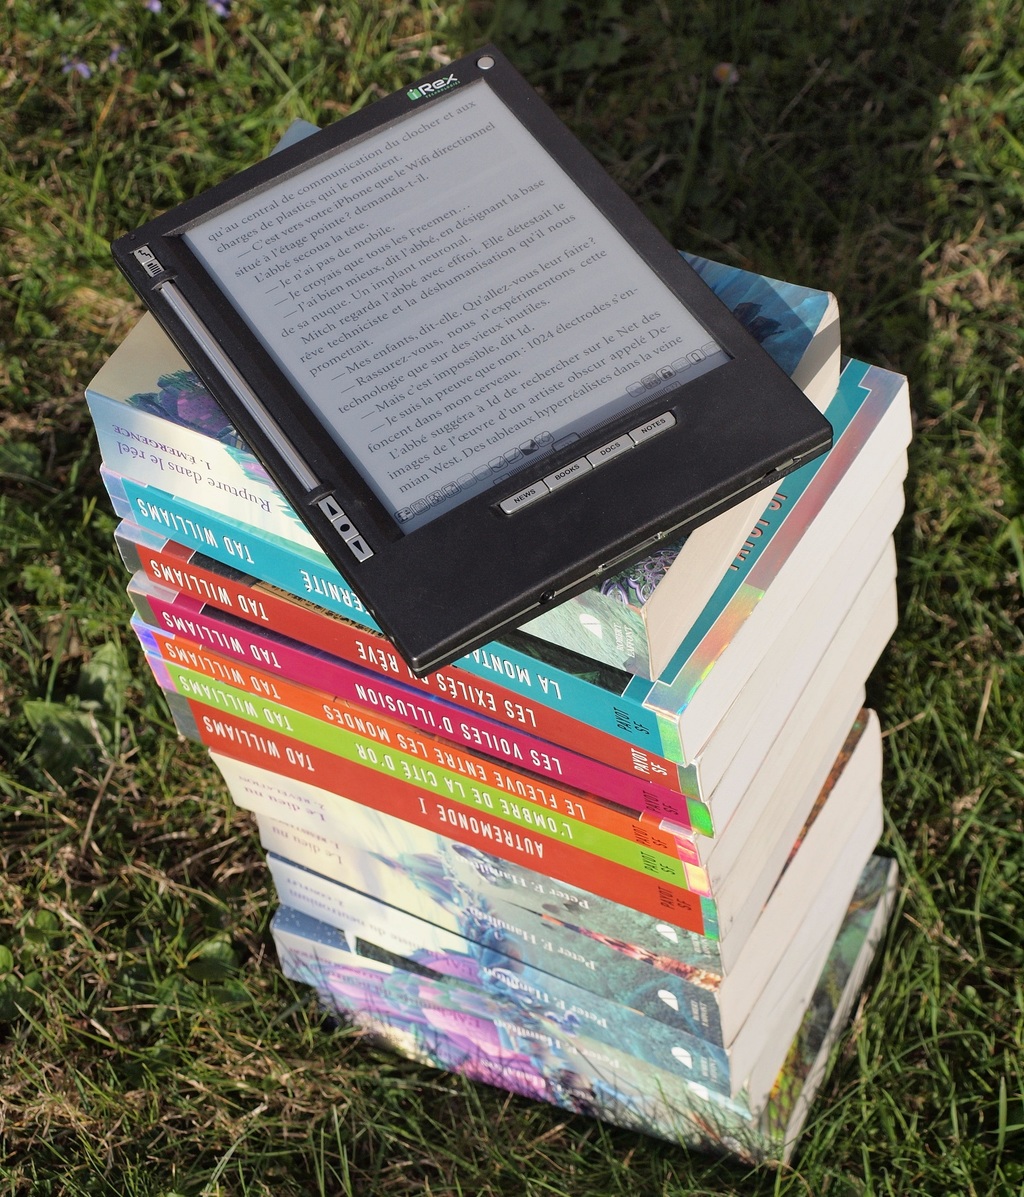 Leitores digitais permitem armazenar grande quantidade de livros em um pequeno aparelho